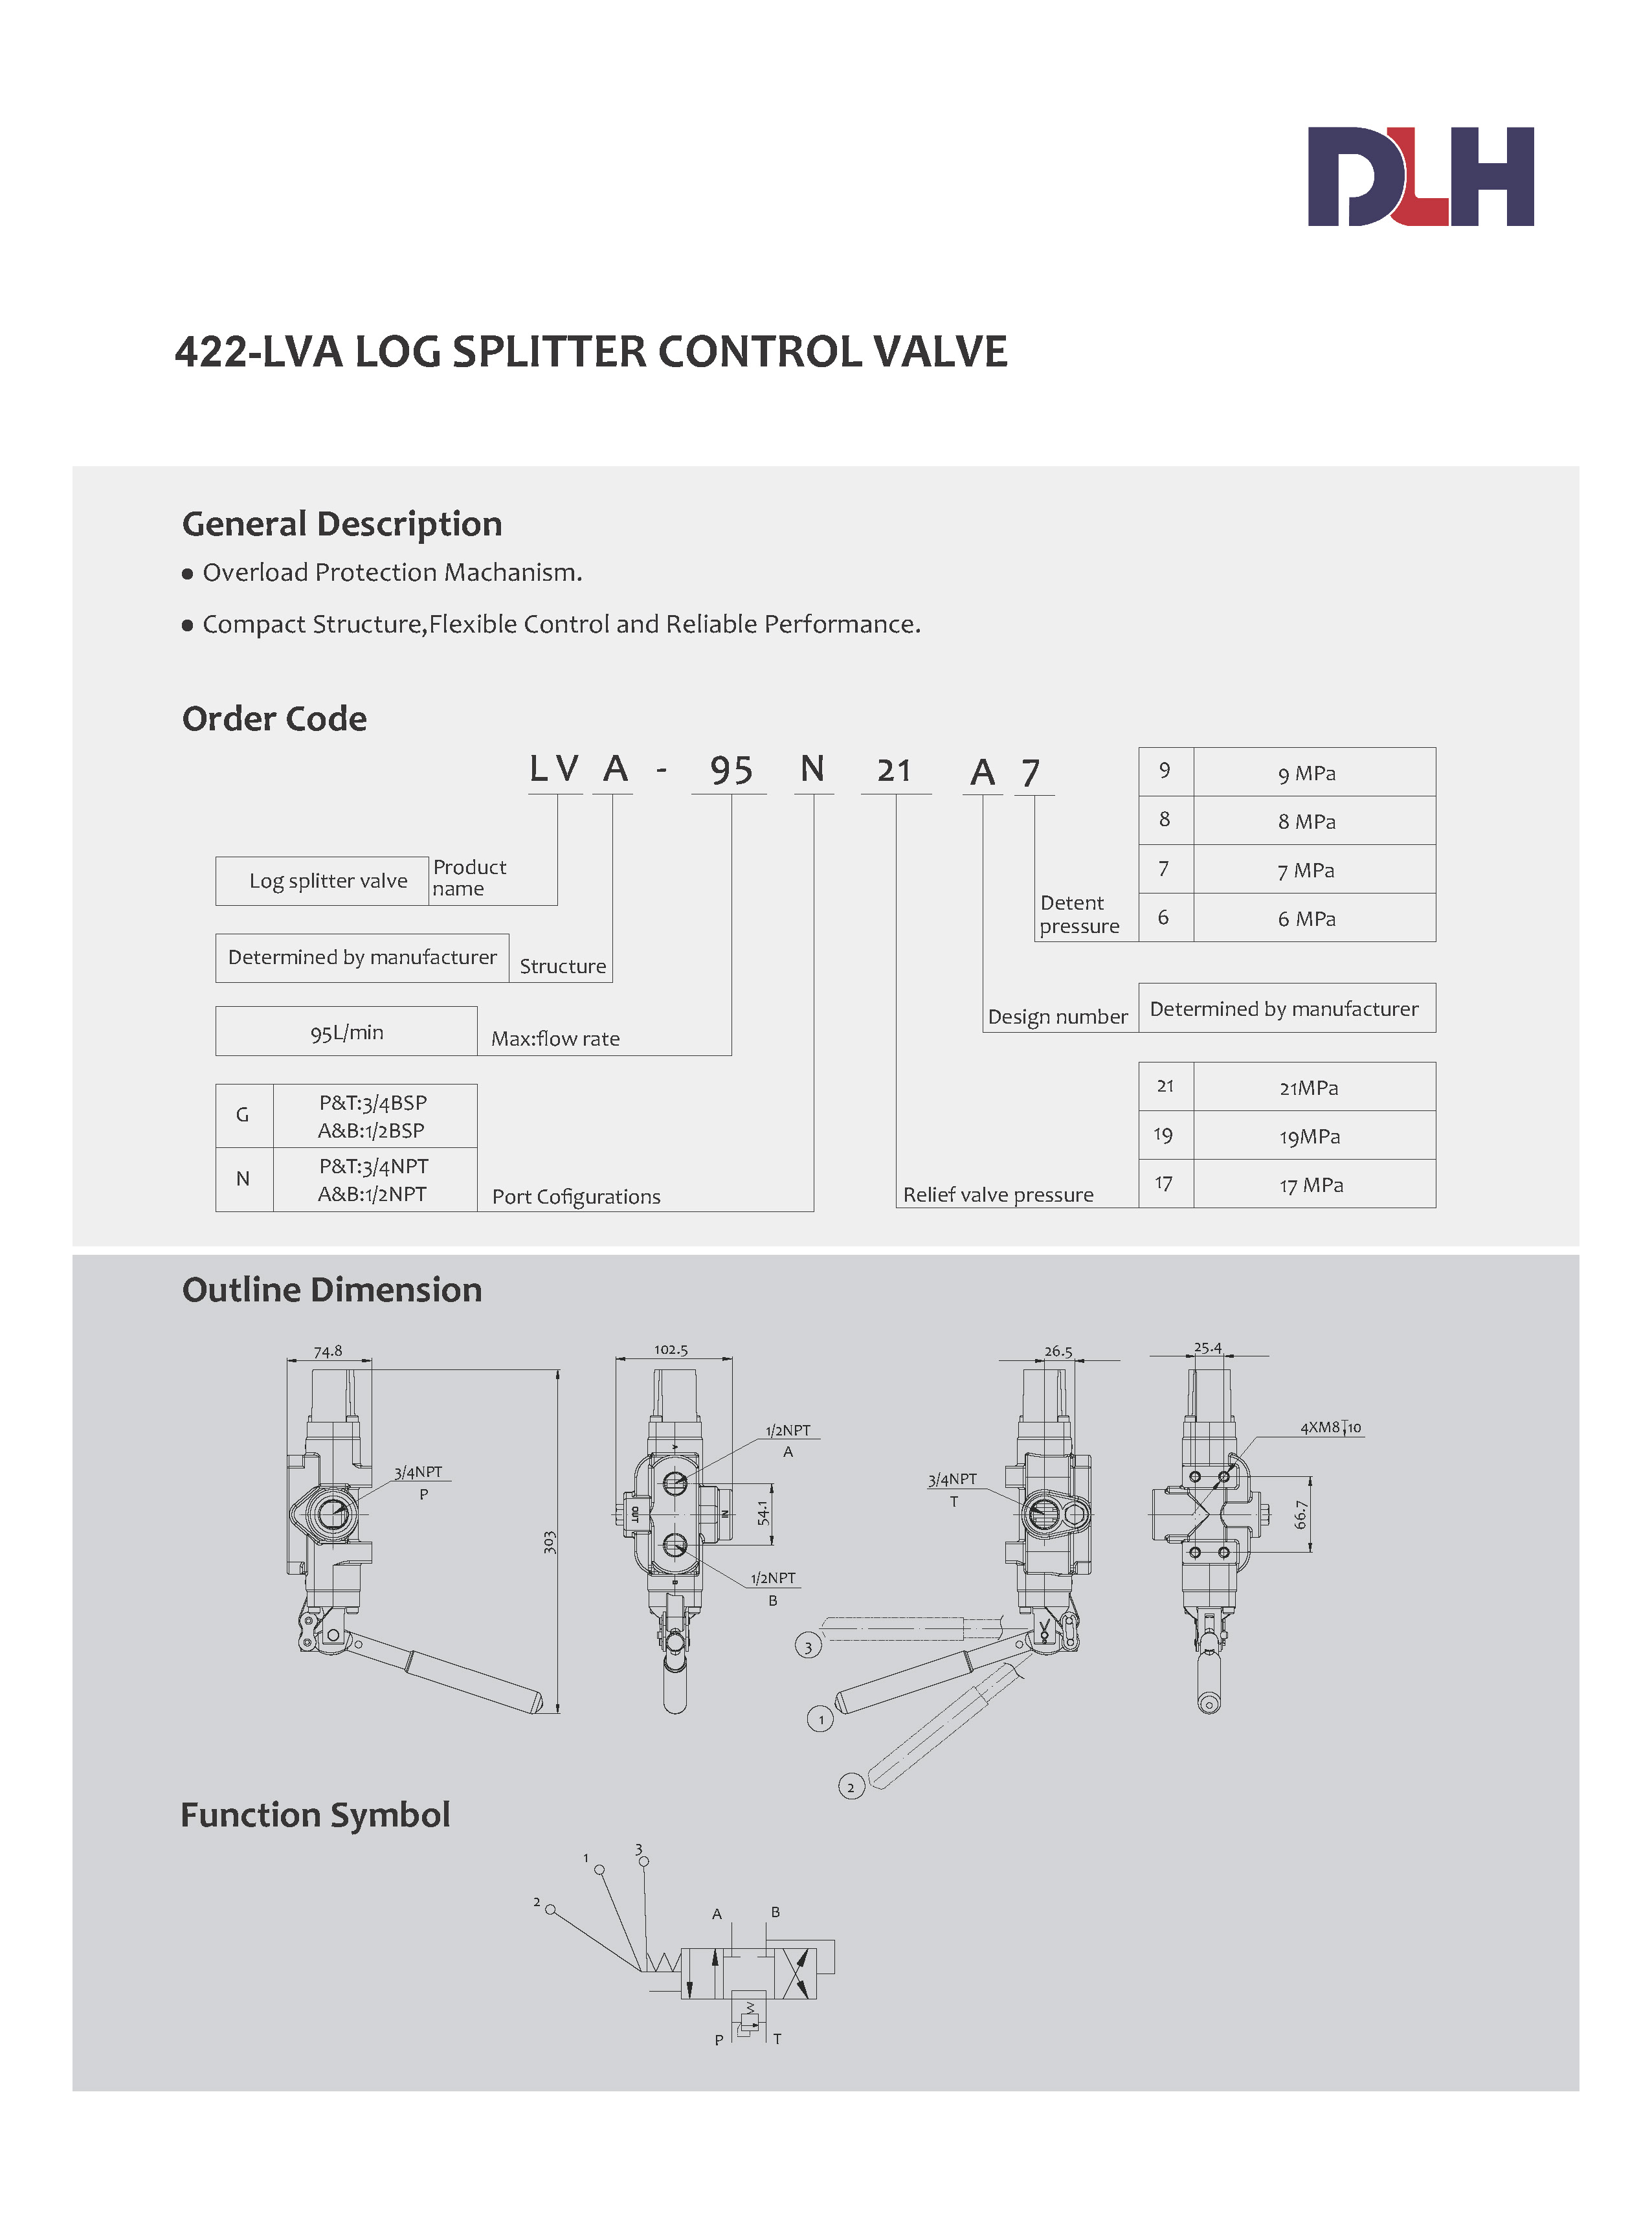 LVA Log Splitter Control Valves